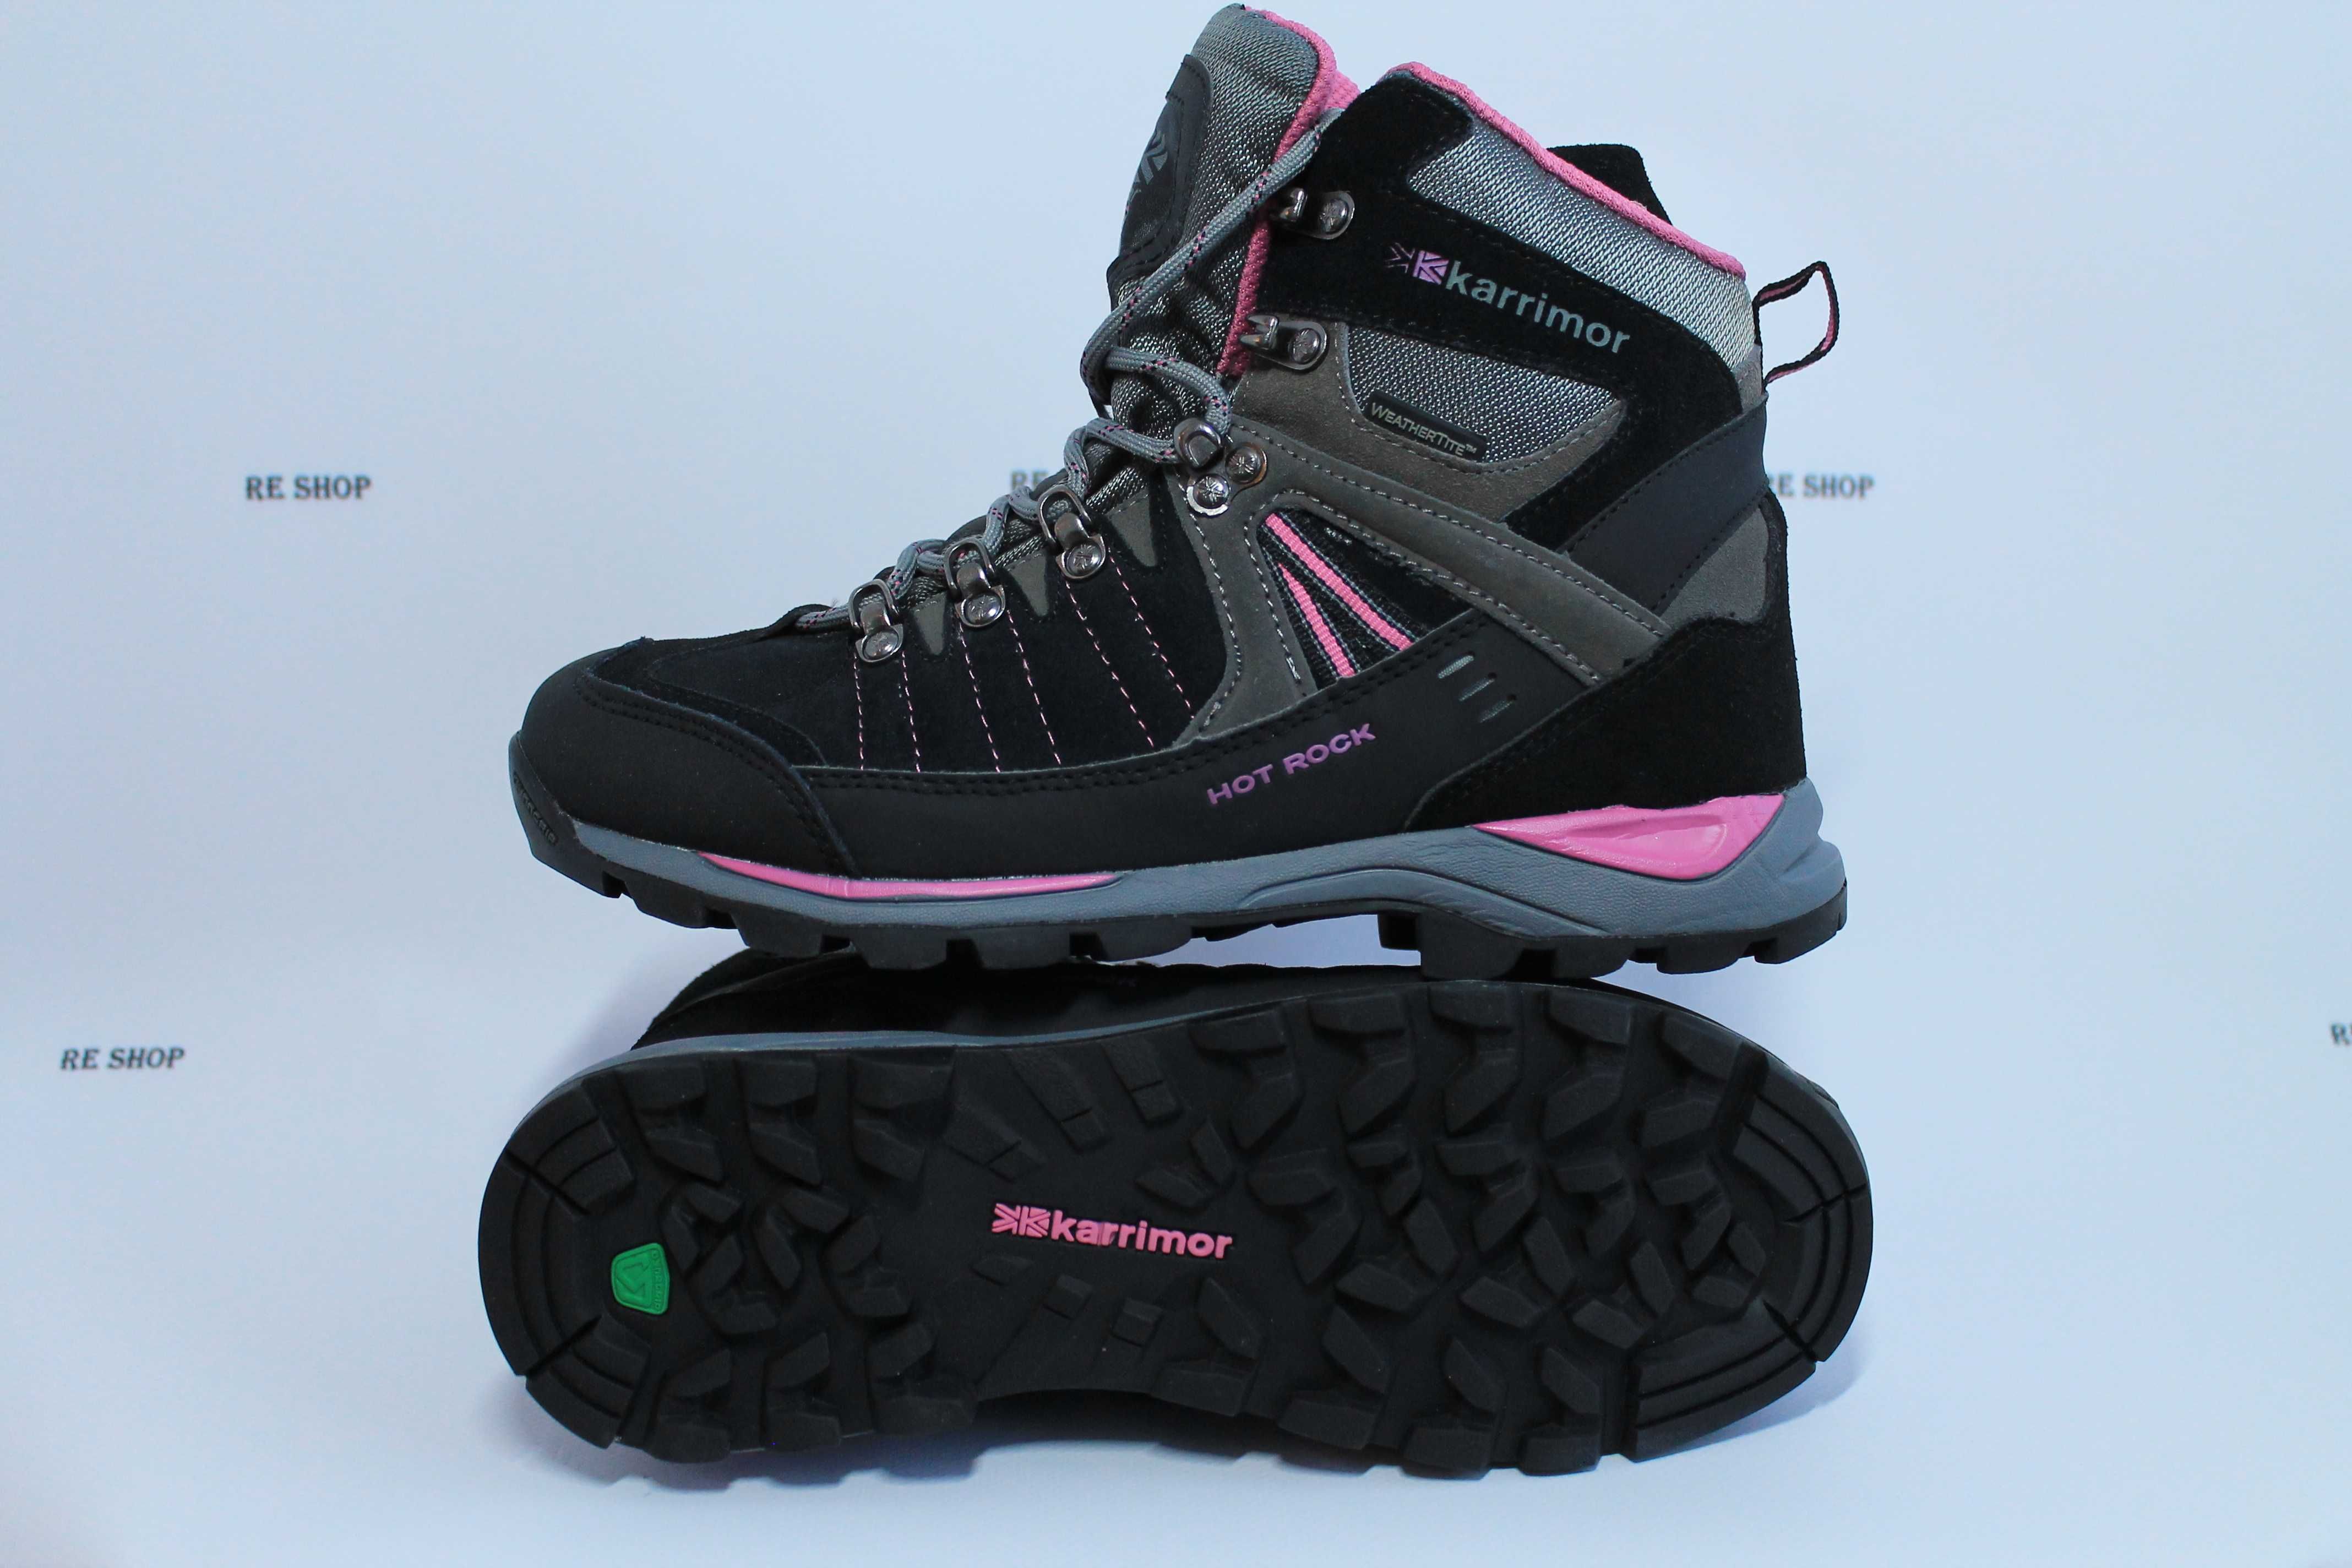 Жіночі черевики KARRIMOR Hot Rock (Англія), Waterproof